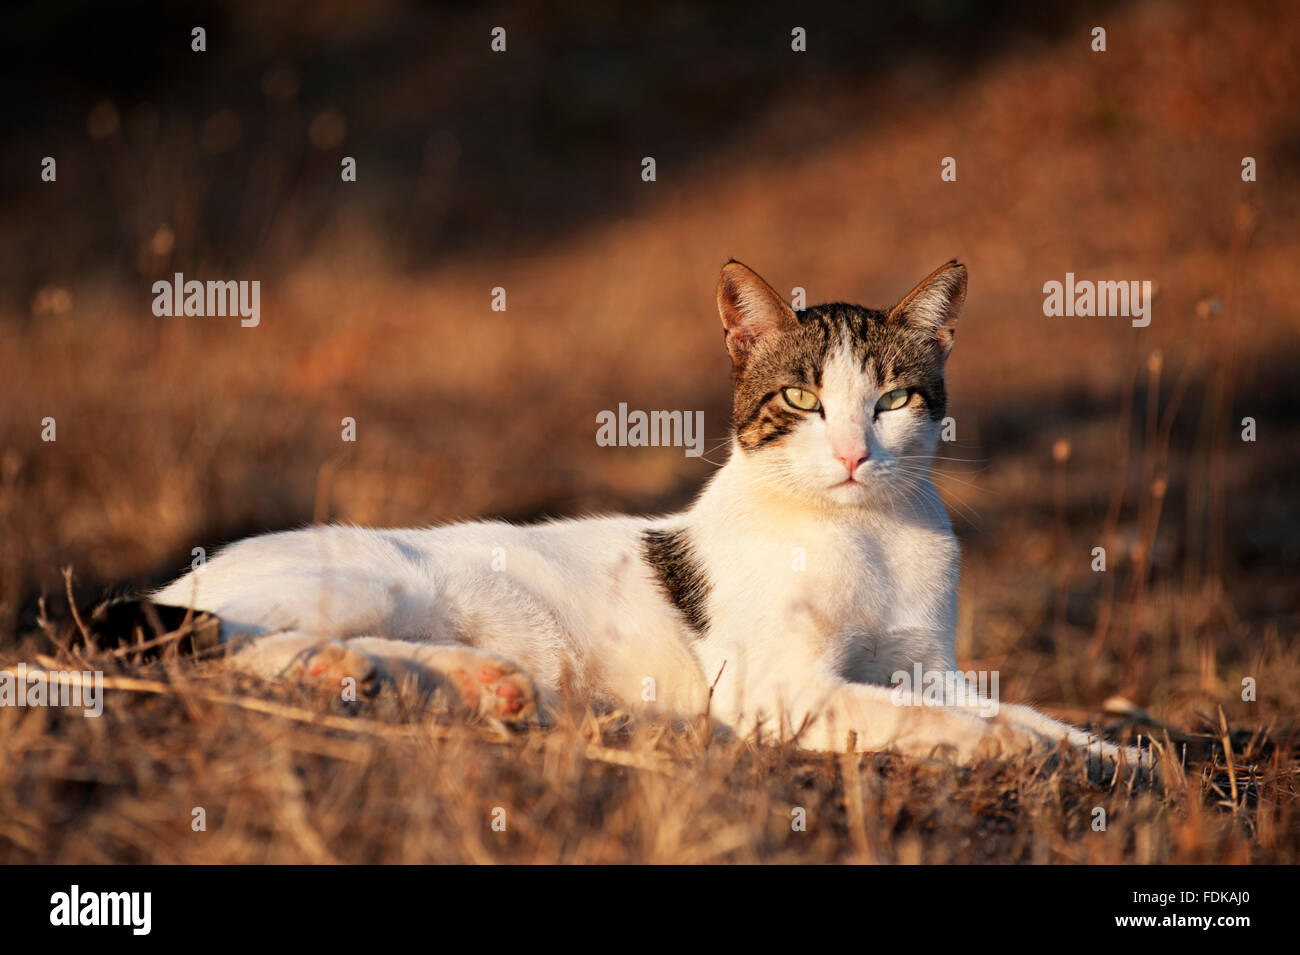 Ritratto di un gatto sdraiato su un terreno arido Foto Stock